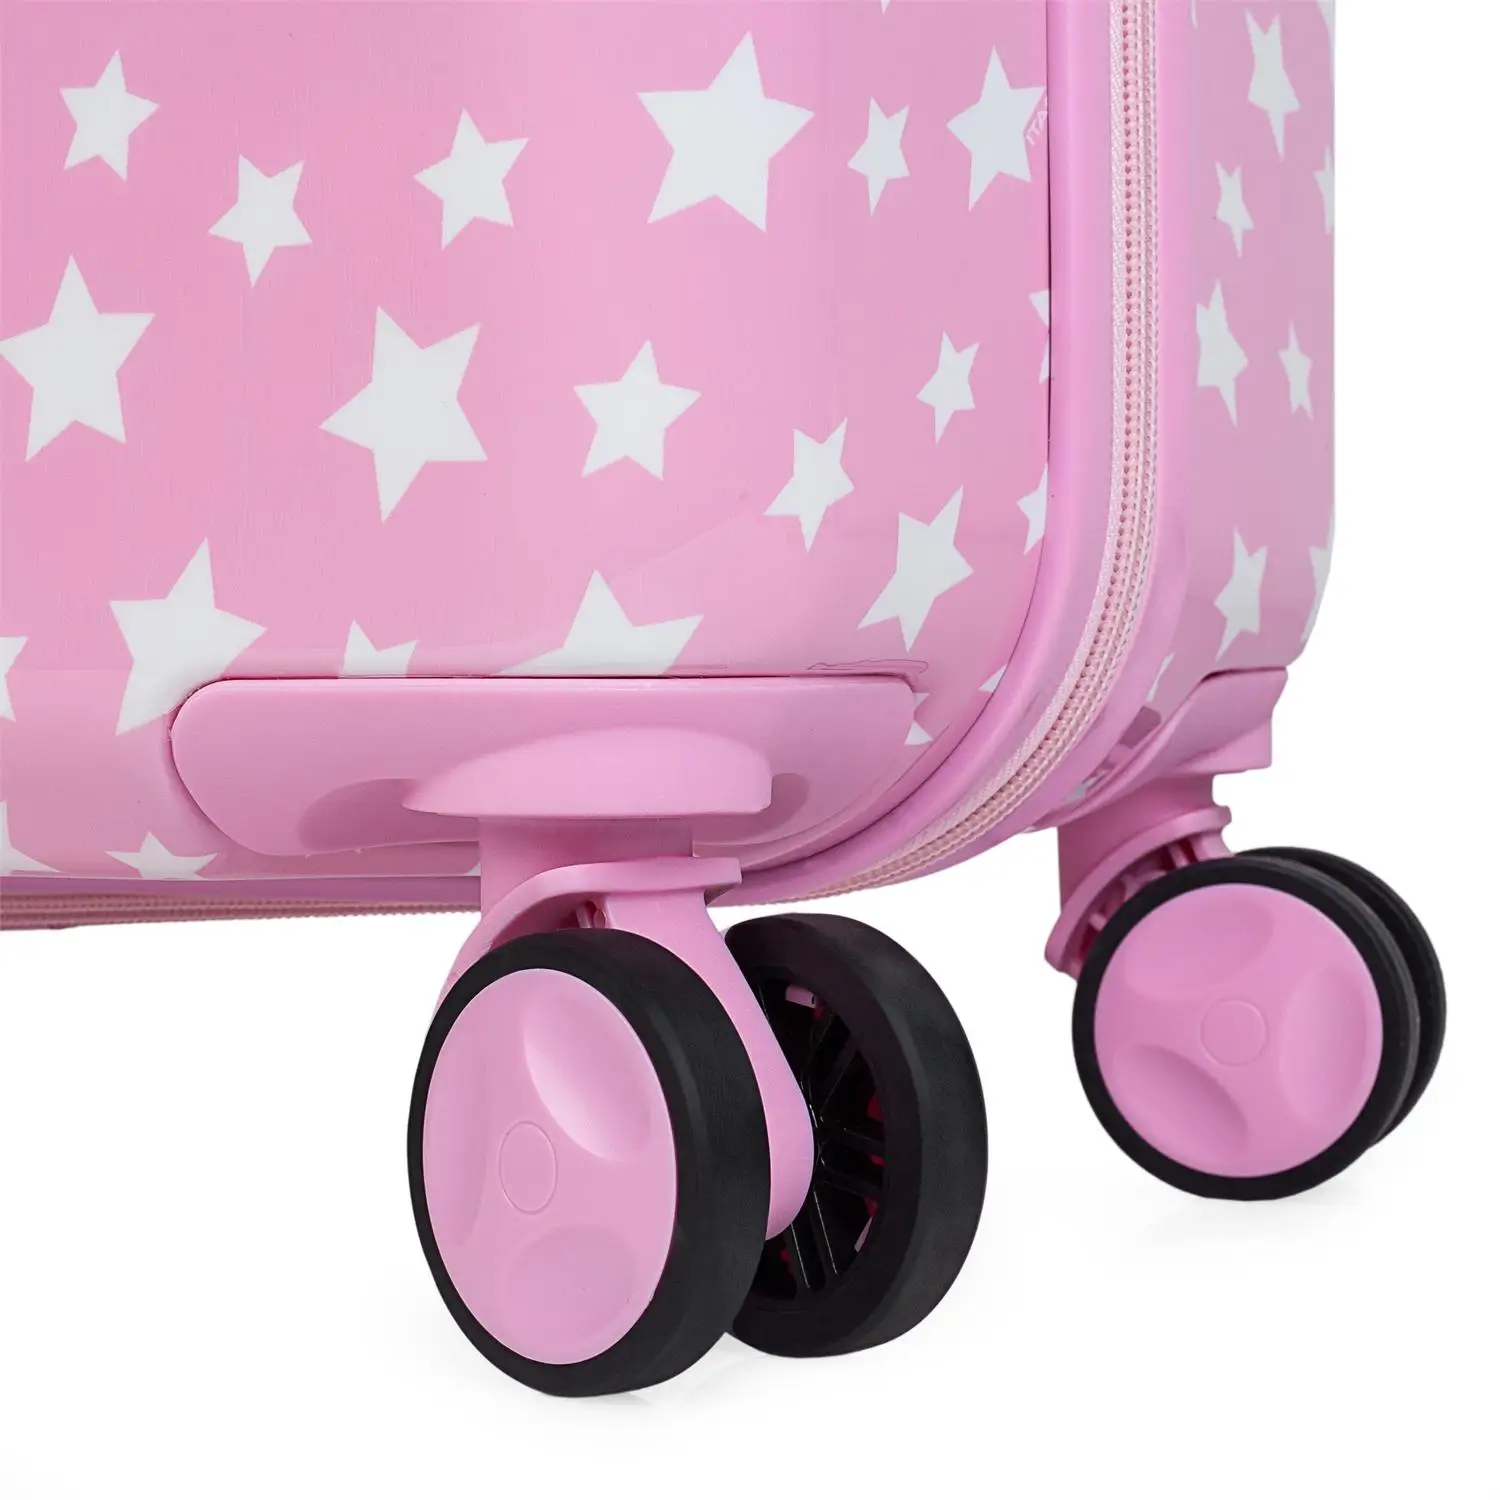 Набор детских чемоданы путешествия 4 колеса тележки. Поликарбонатный принт со звездами. 2 размера: Peq